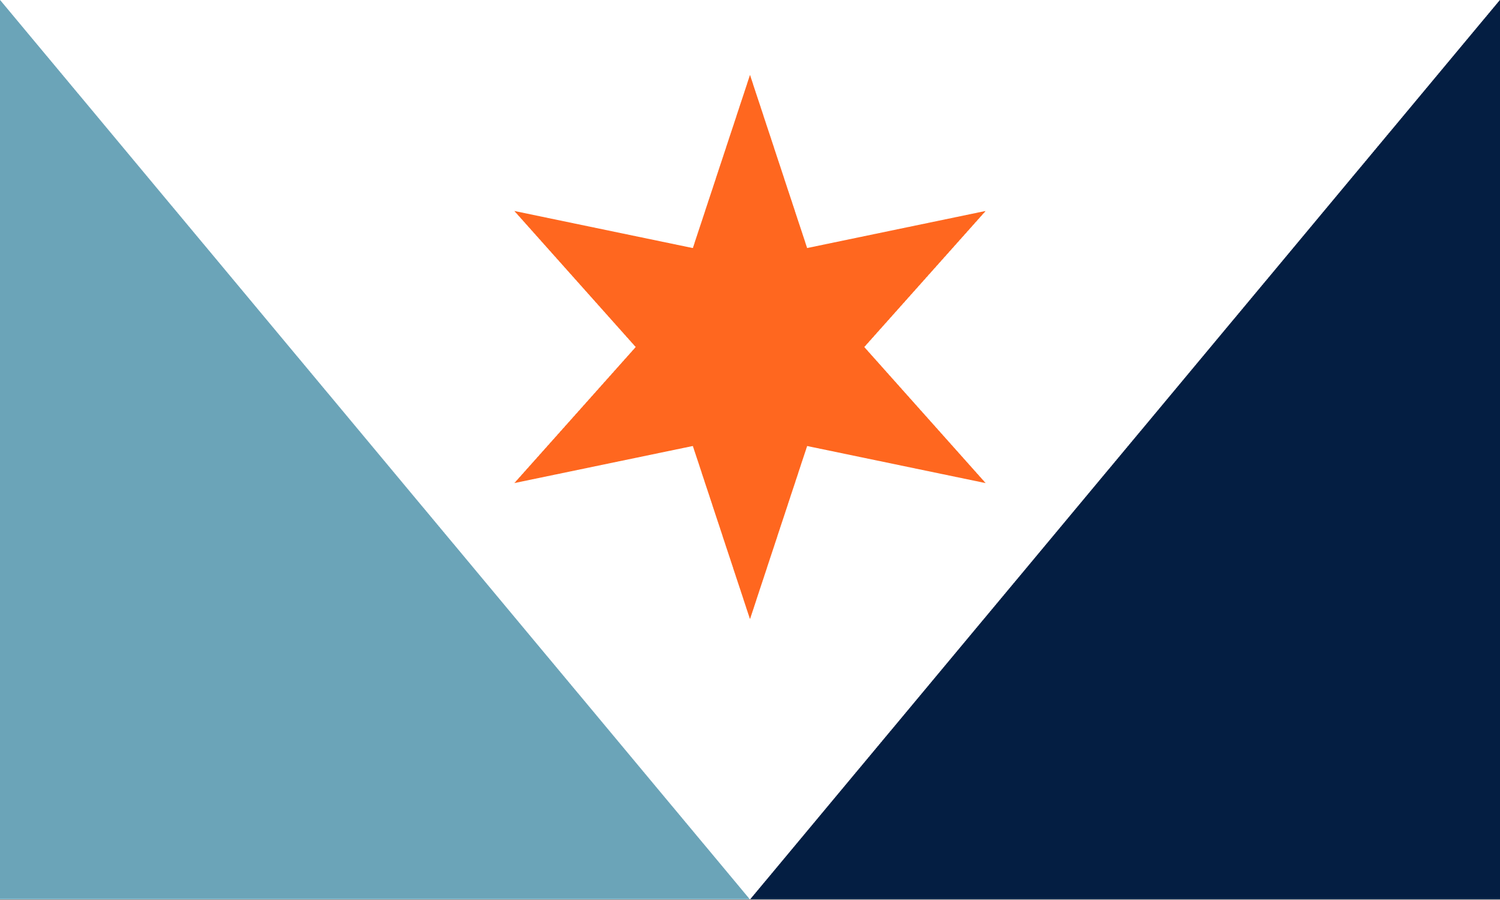 City Flag of Syracuse, NY by Hartbreakers Creative